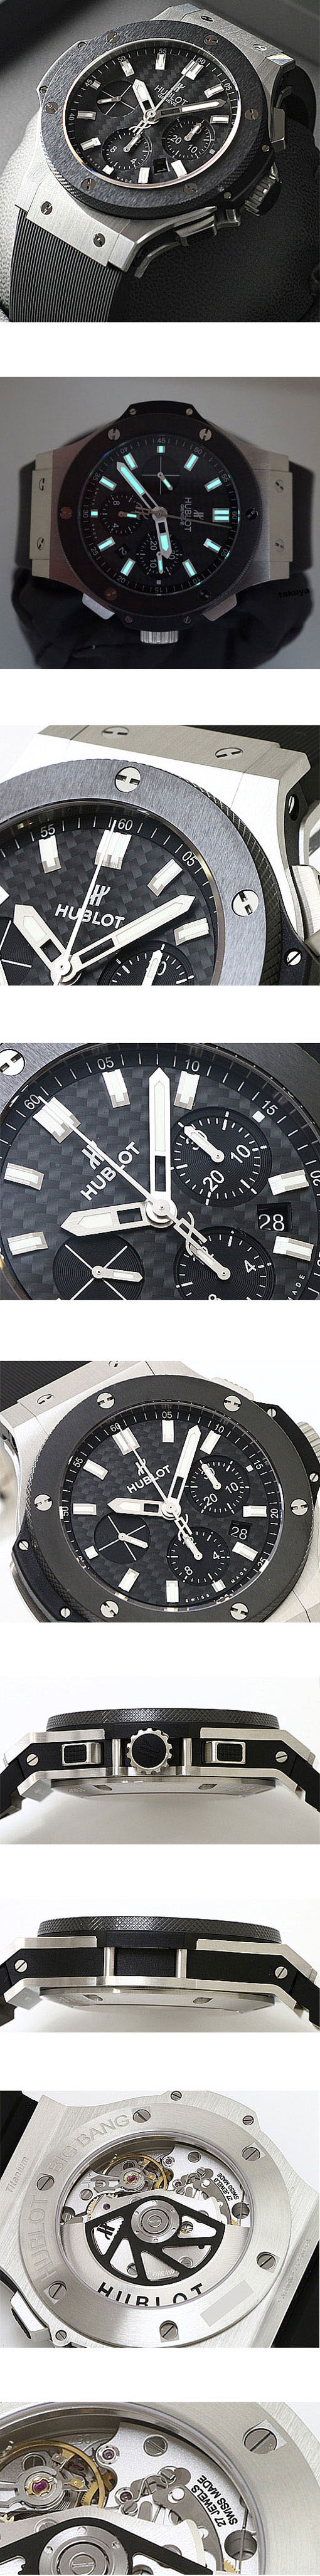 【格安腕時計】ウブロ ビッグバン エヴォリューション スチール セラミック 301.SM.1770.RX Cal.HUB 4100搭載